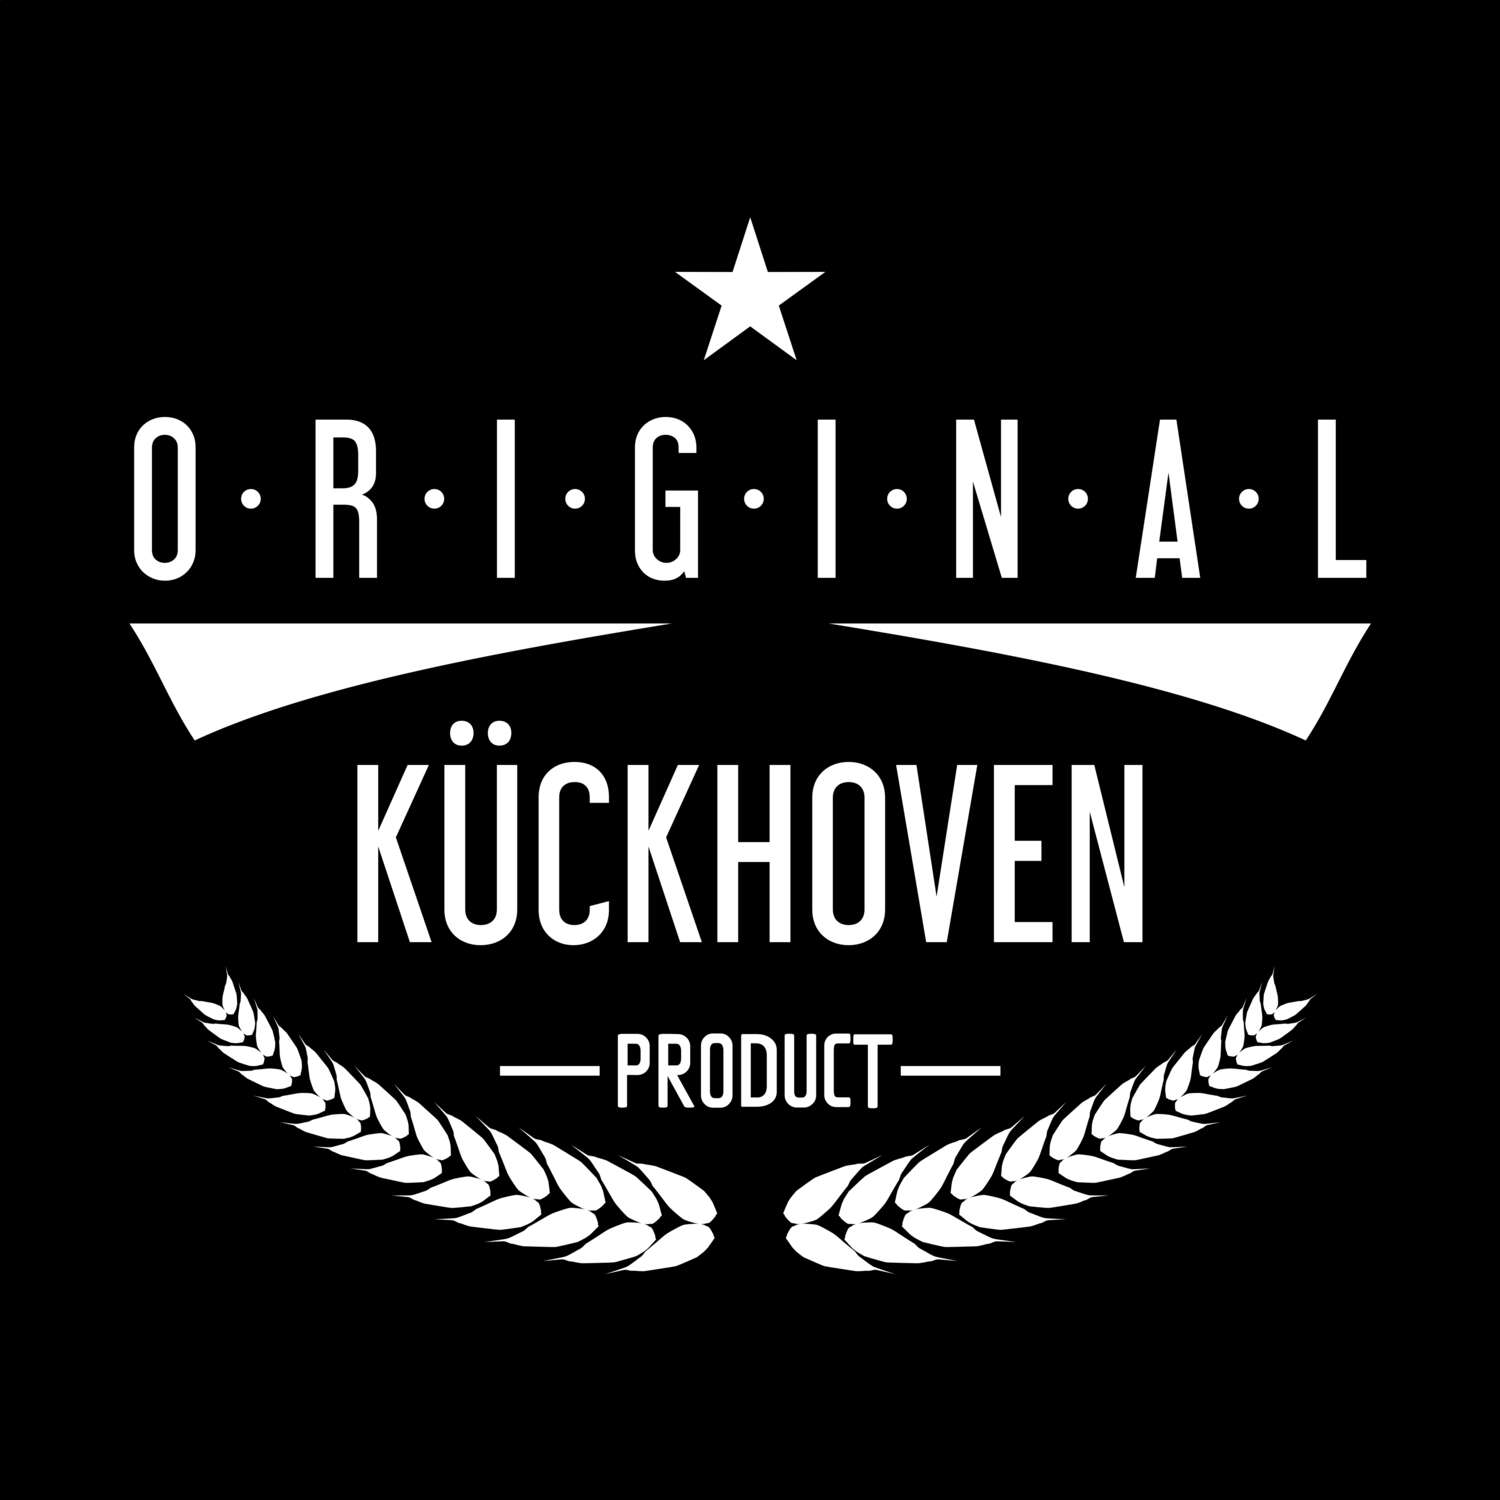 Kückhoven T-Shirt »Original Product«